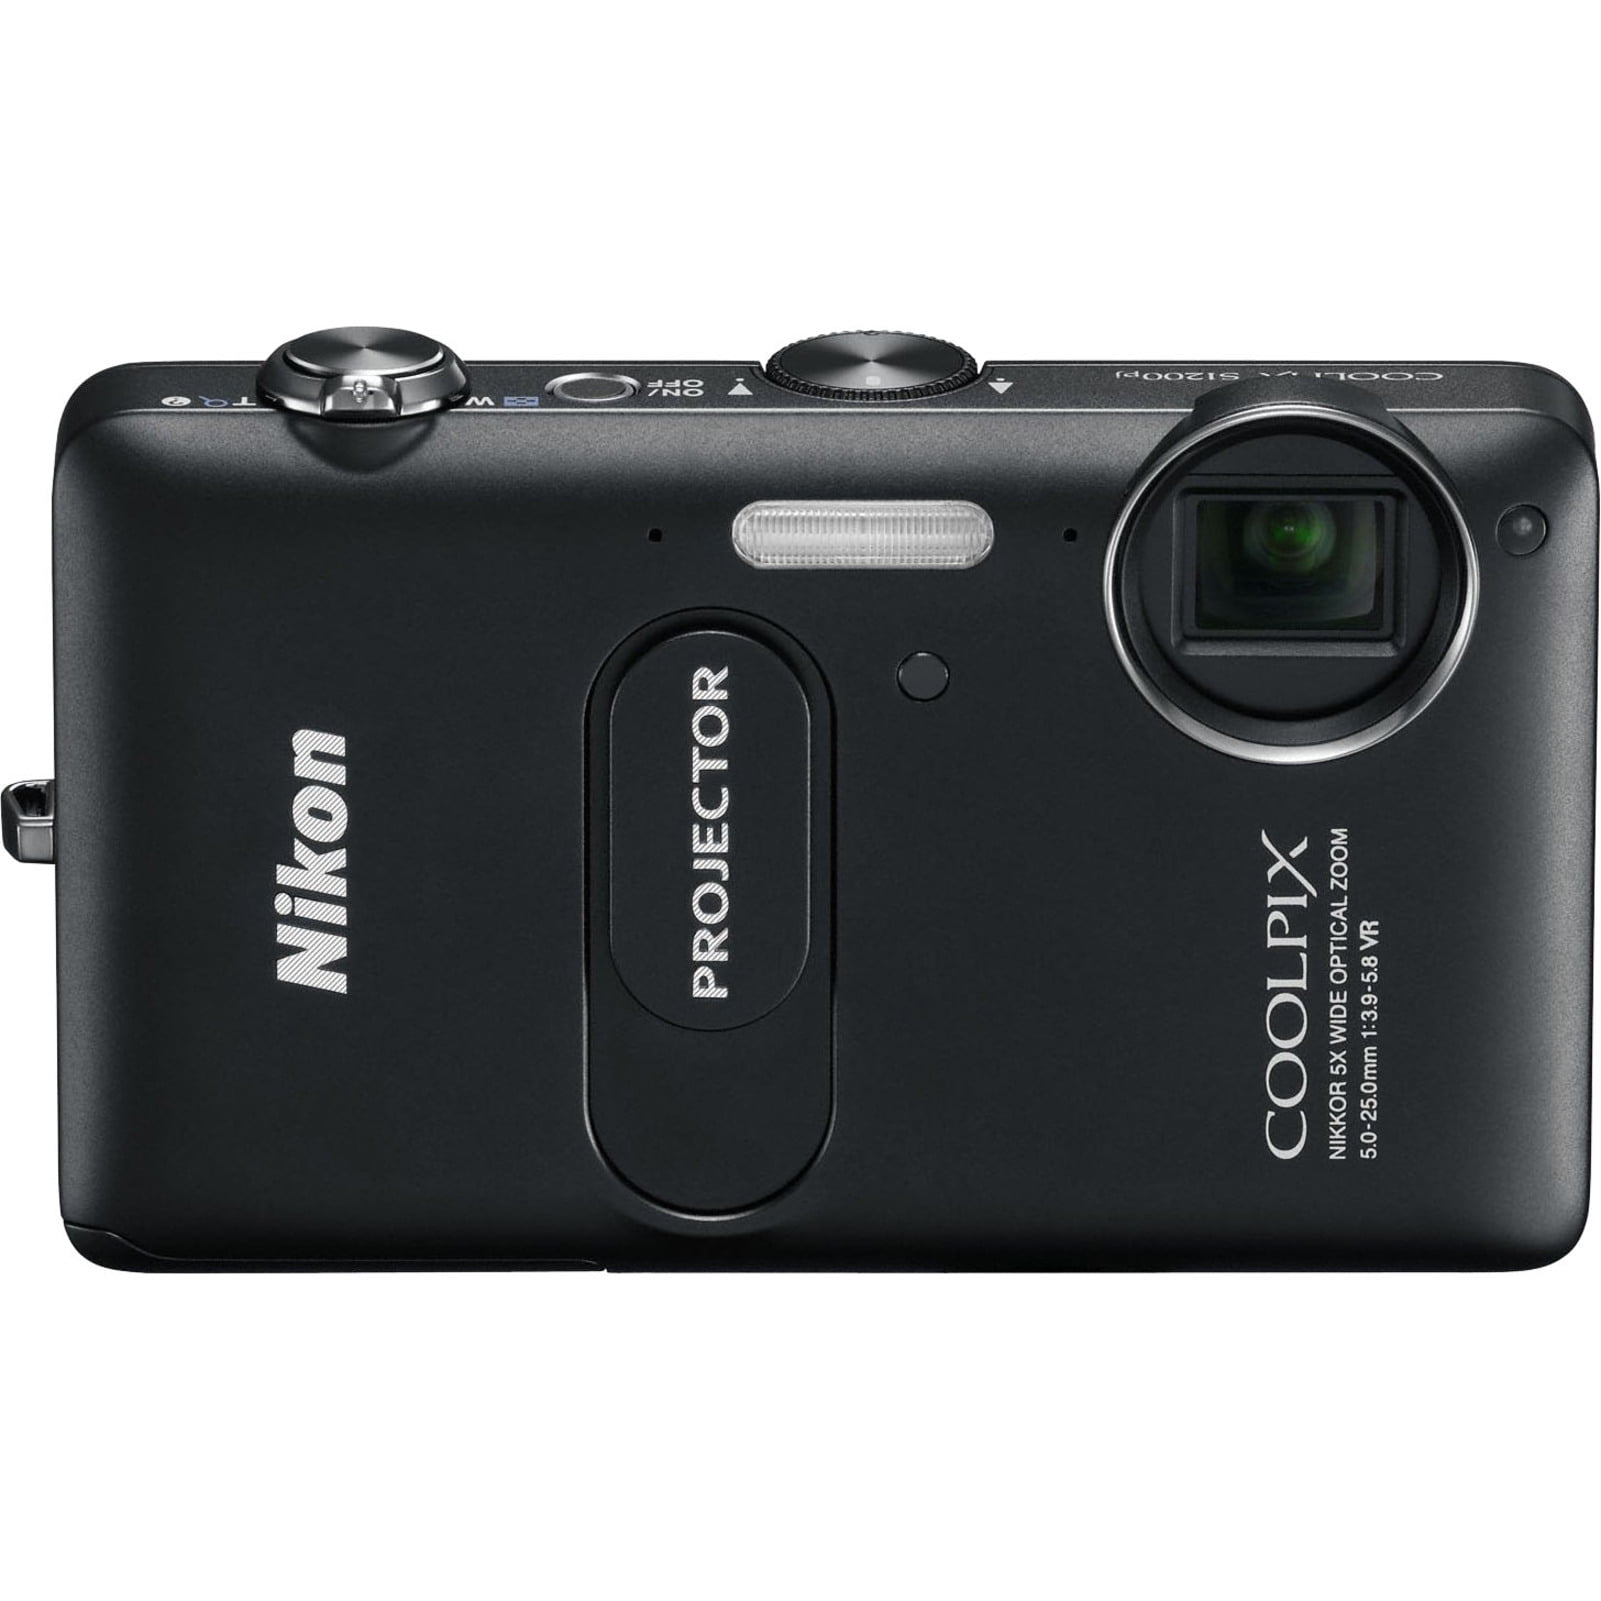 Nieuwjaar Zoek machine optimalisatie Premisse Nikon Coolpix S1200pj 14.1 Megapixel Compact Camera, Black - Walmart.com